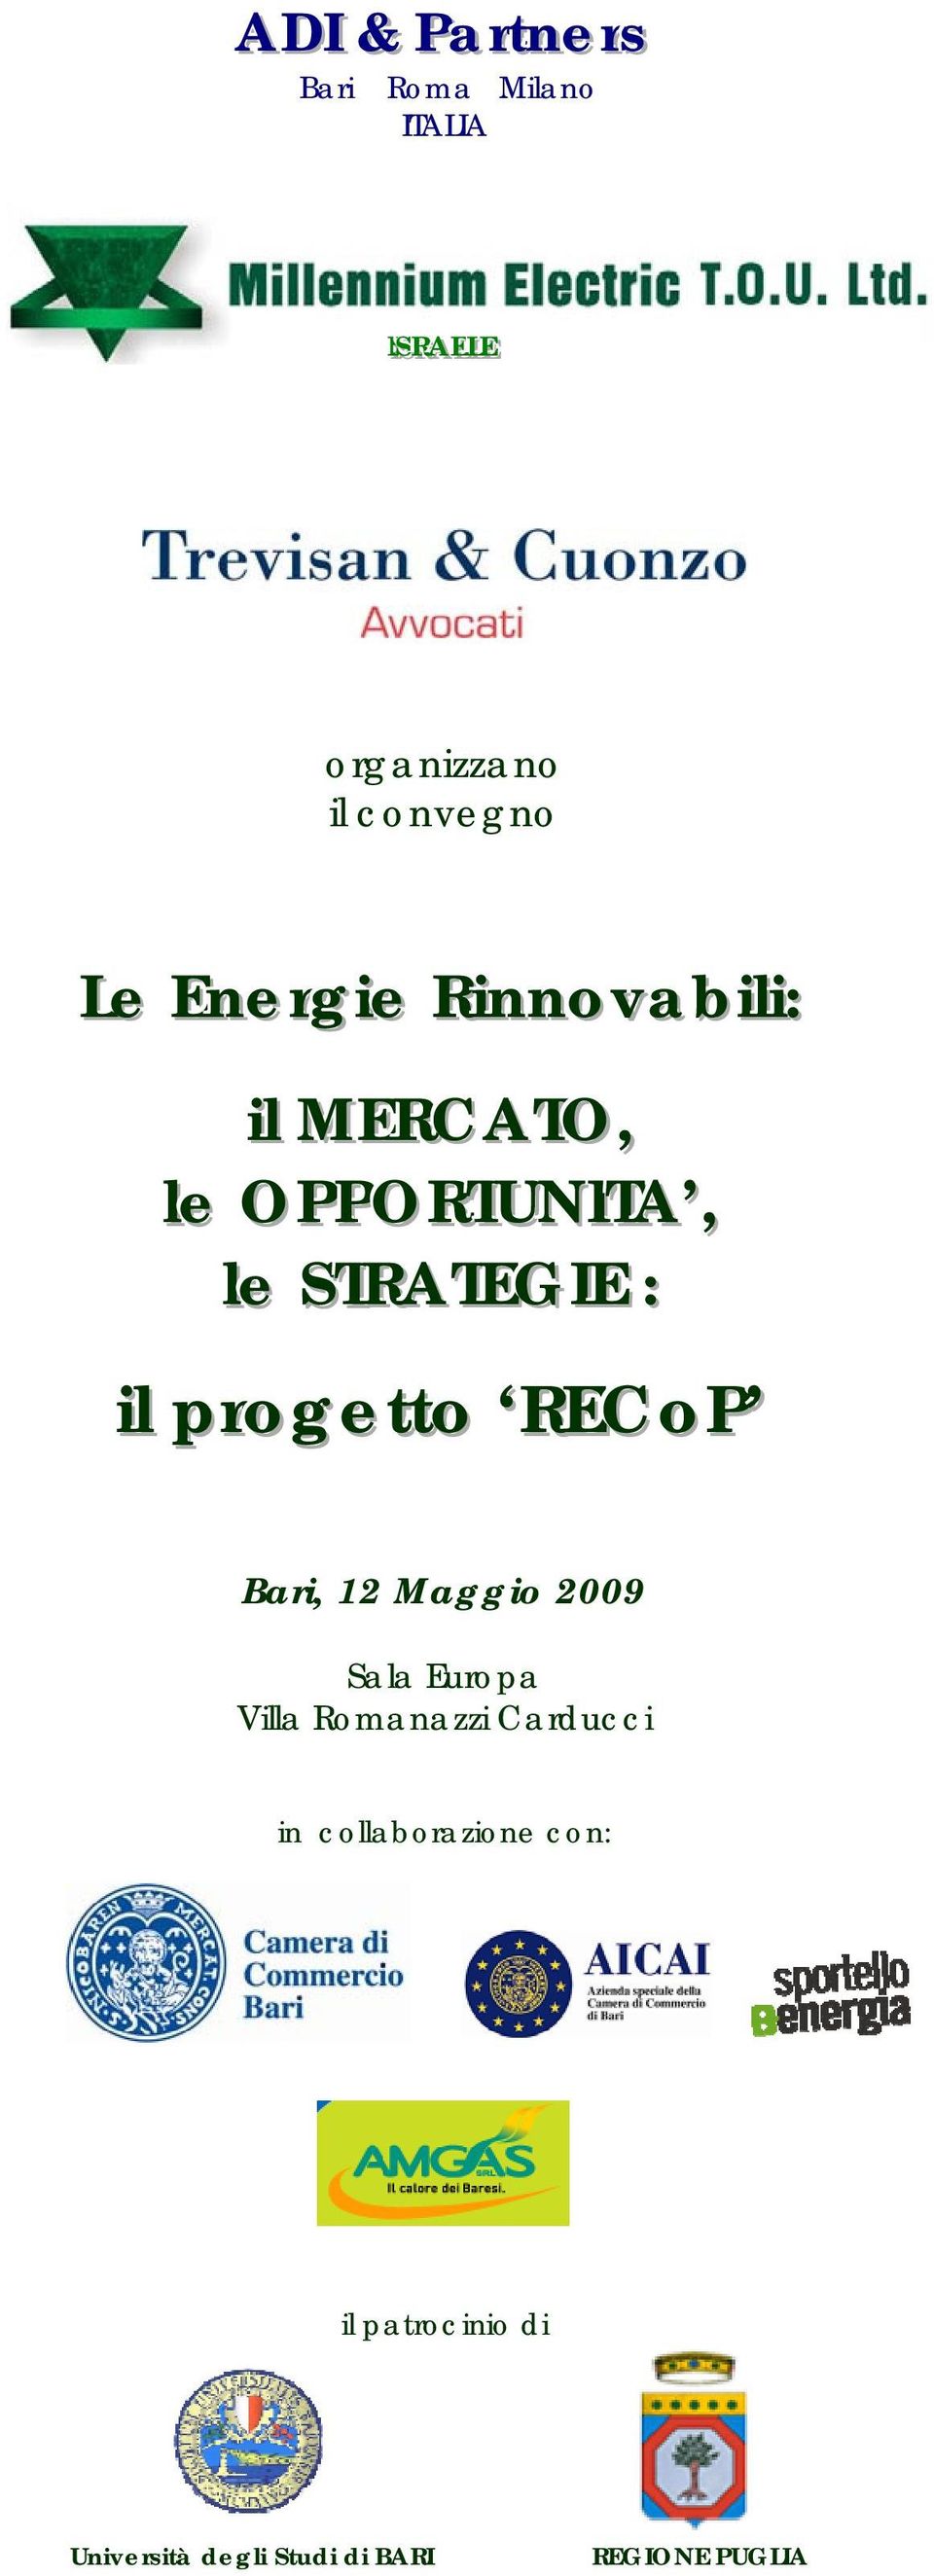 STRATEGIIE :: iill progetto RECoP Bari, 12 Maggio 2009 Sala Europa Villa Romanazzi